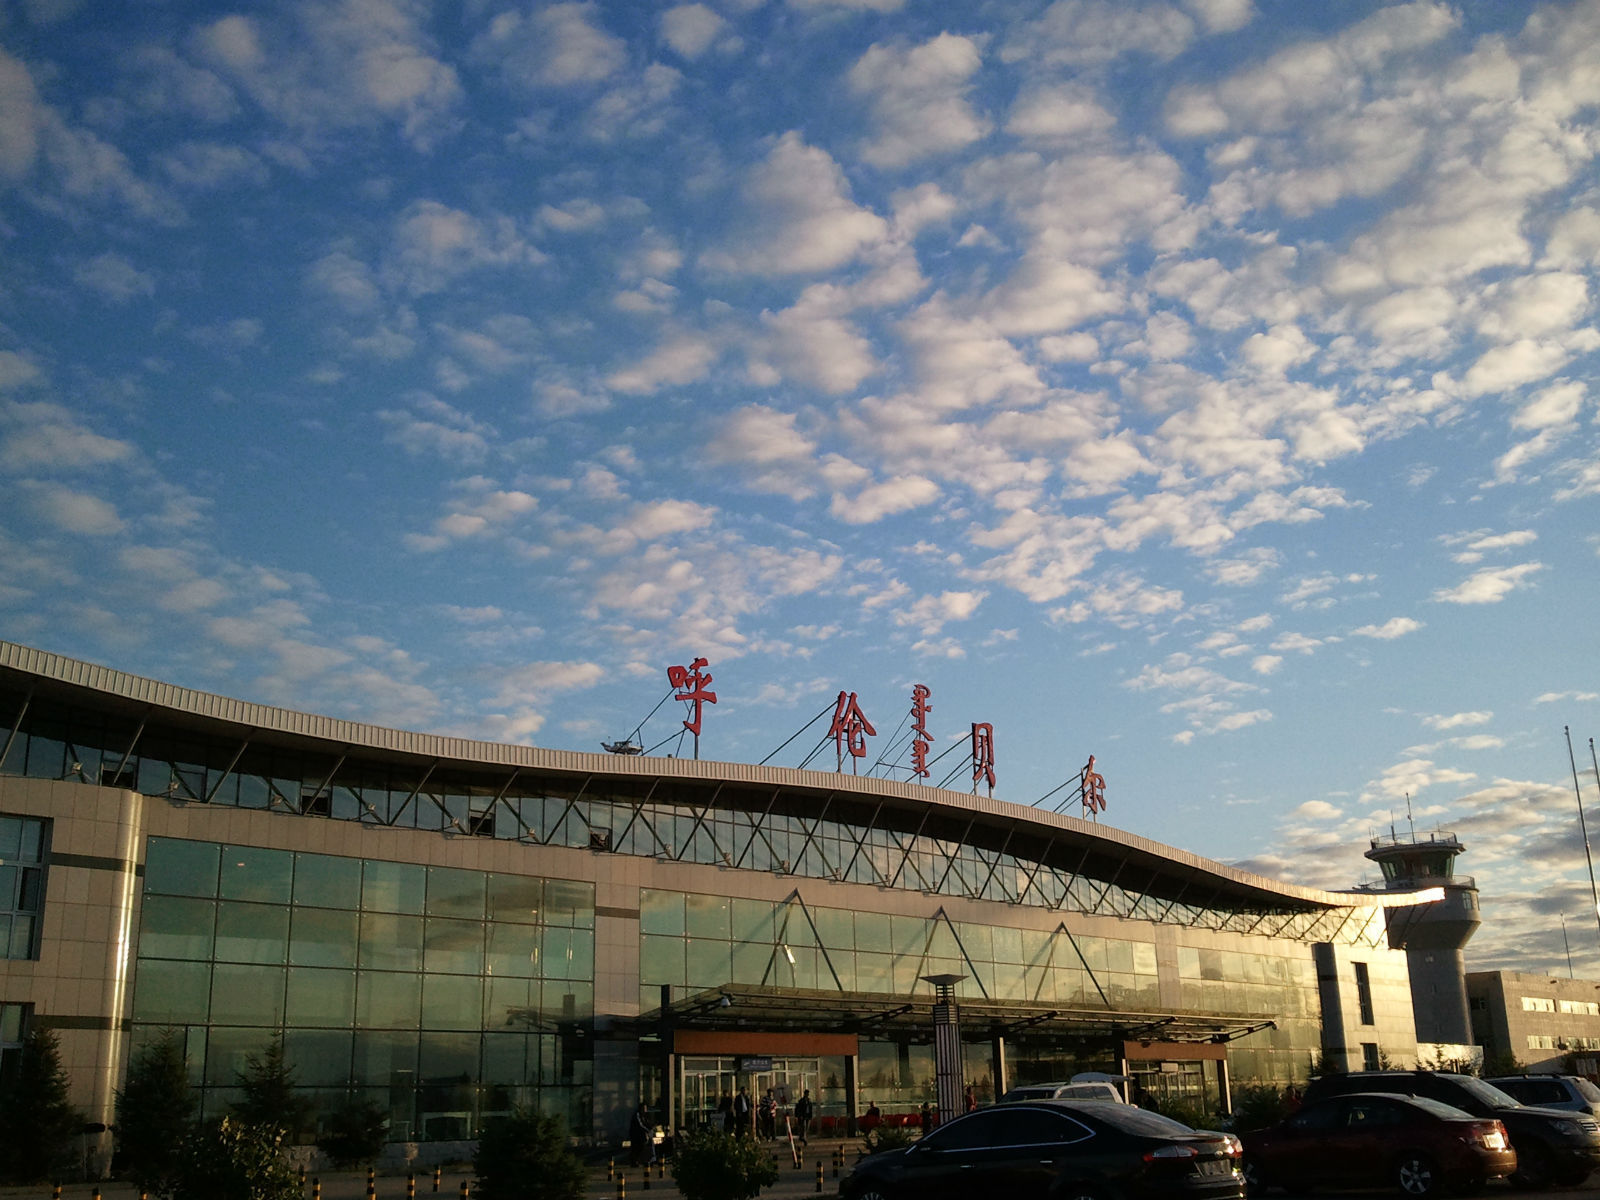 好有特色的机场,有蒙古包造型的建筑爱上了呼伦贝尔的天空 海拉尔